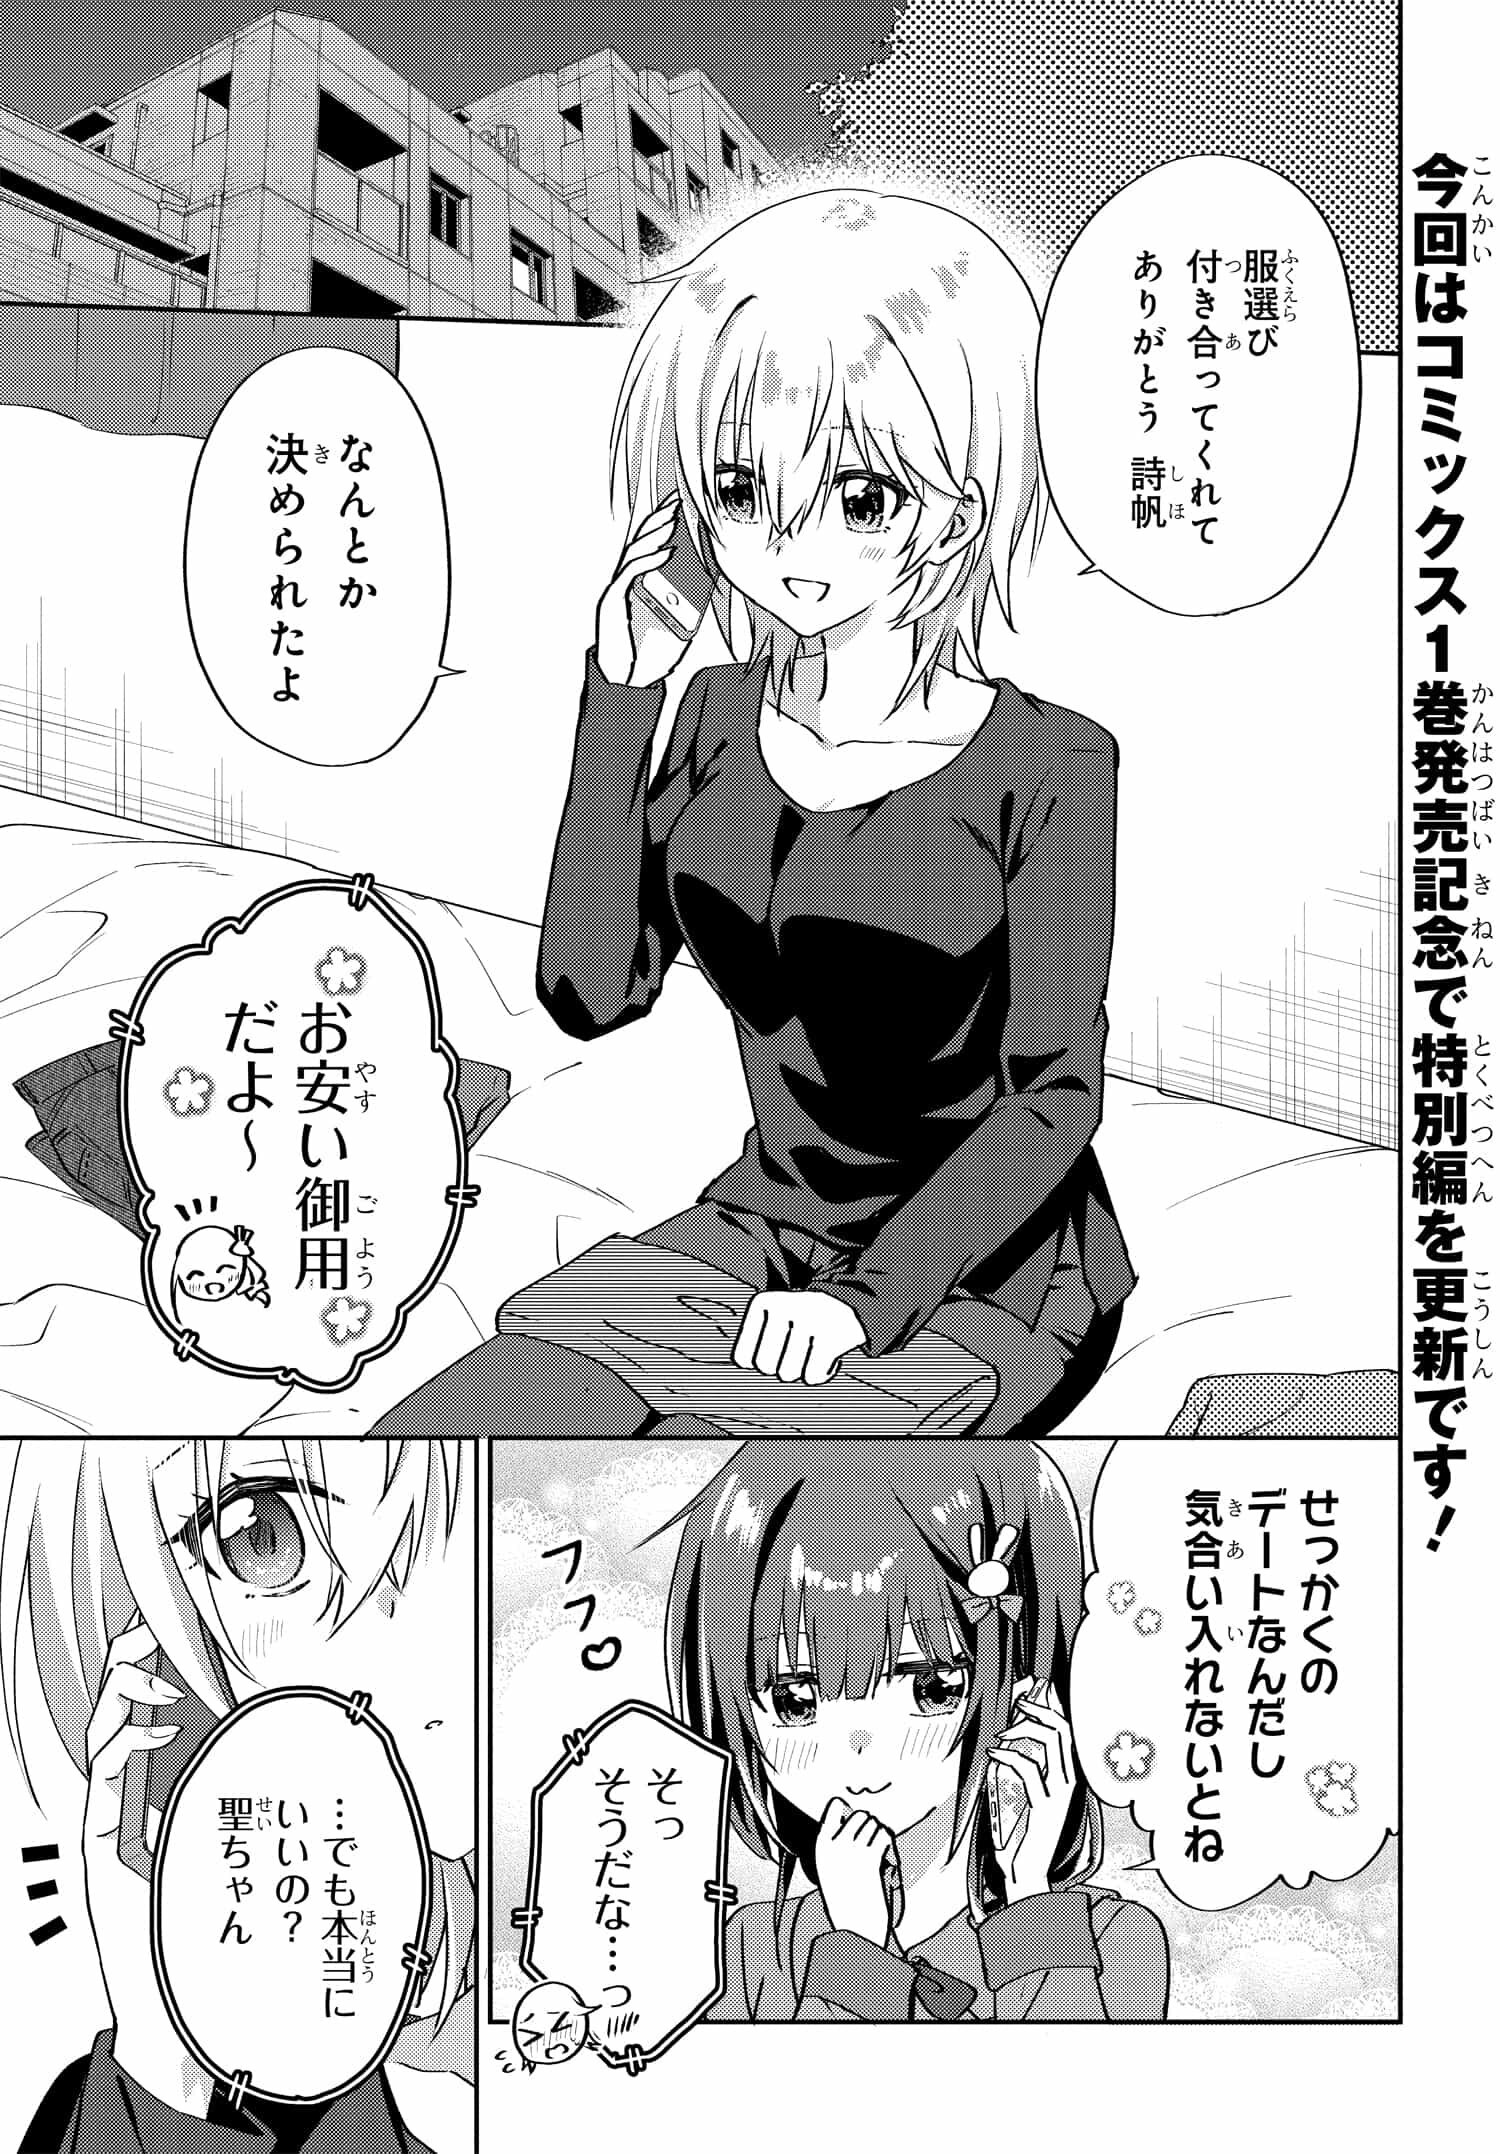 Romcom Manga ni Haitte Shimatta no de, Oshi no Make Heroine wo Zenryoku de Shiawase ni suru - Chapter 6.3 - Page 1